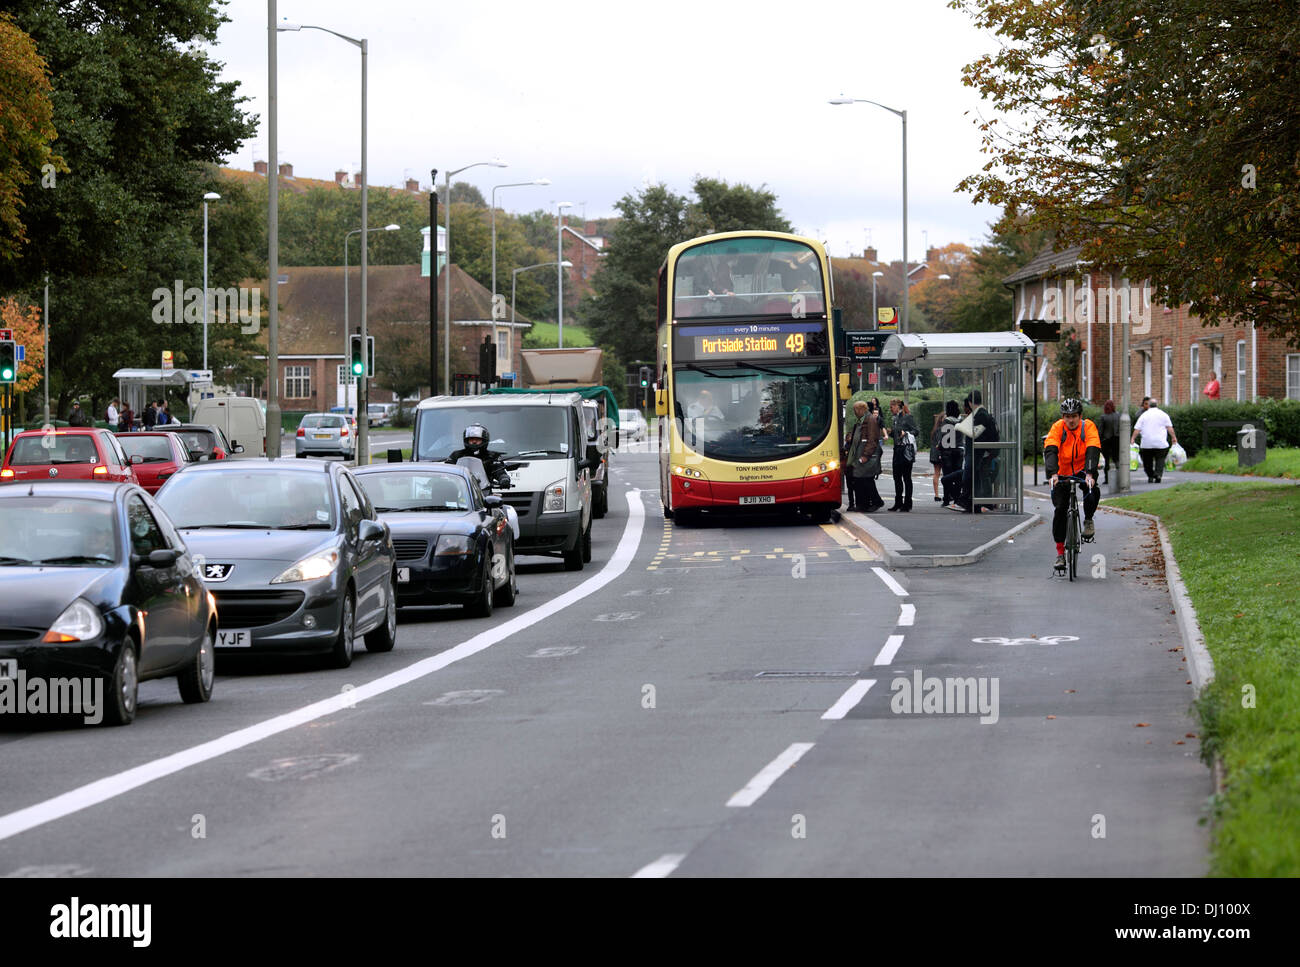 Corsia degli autobus e separare la pista ciclabile, Lewes Road, Brighton. La fermata del bus è posizionato tra la corsia degli autobus e pista ciclabile. Foto Stock